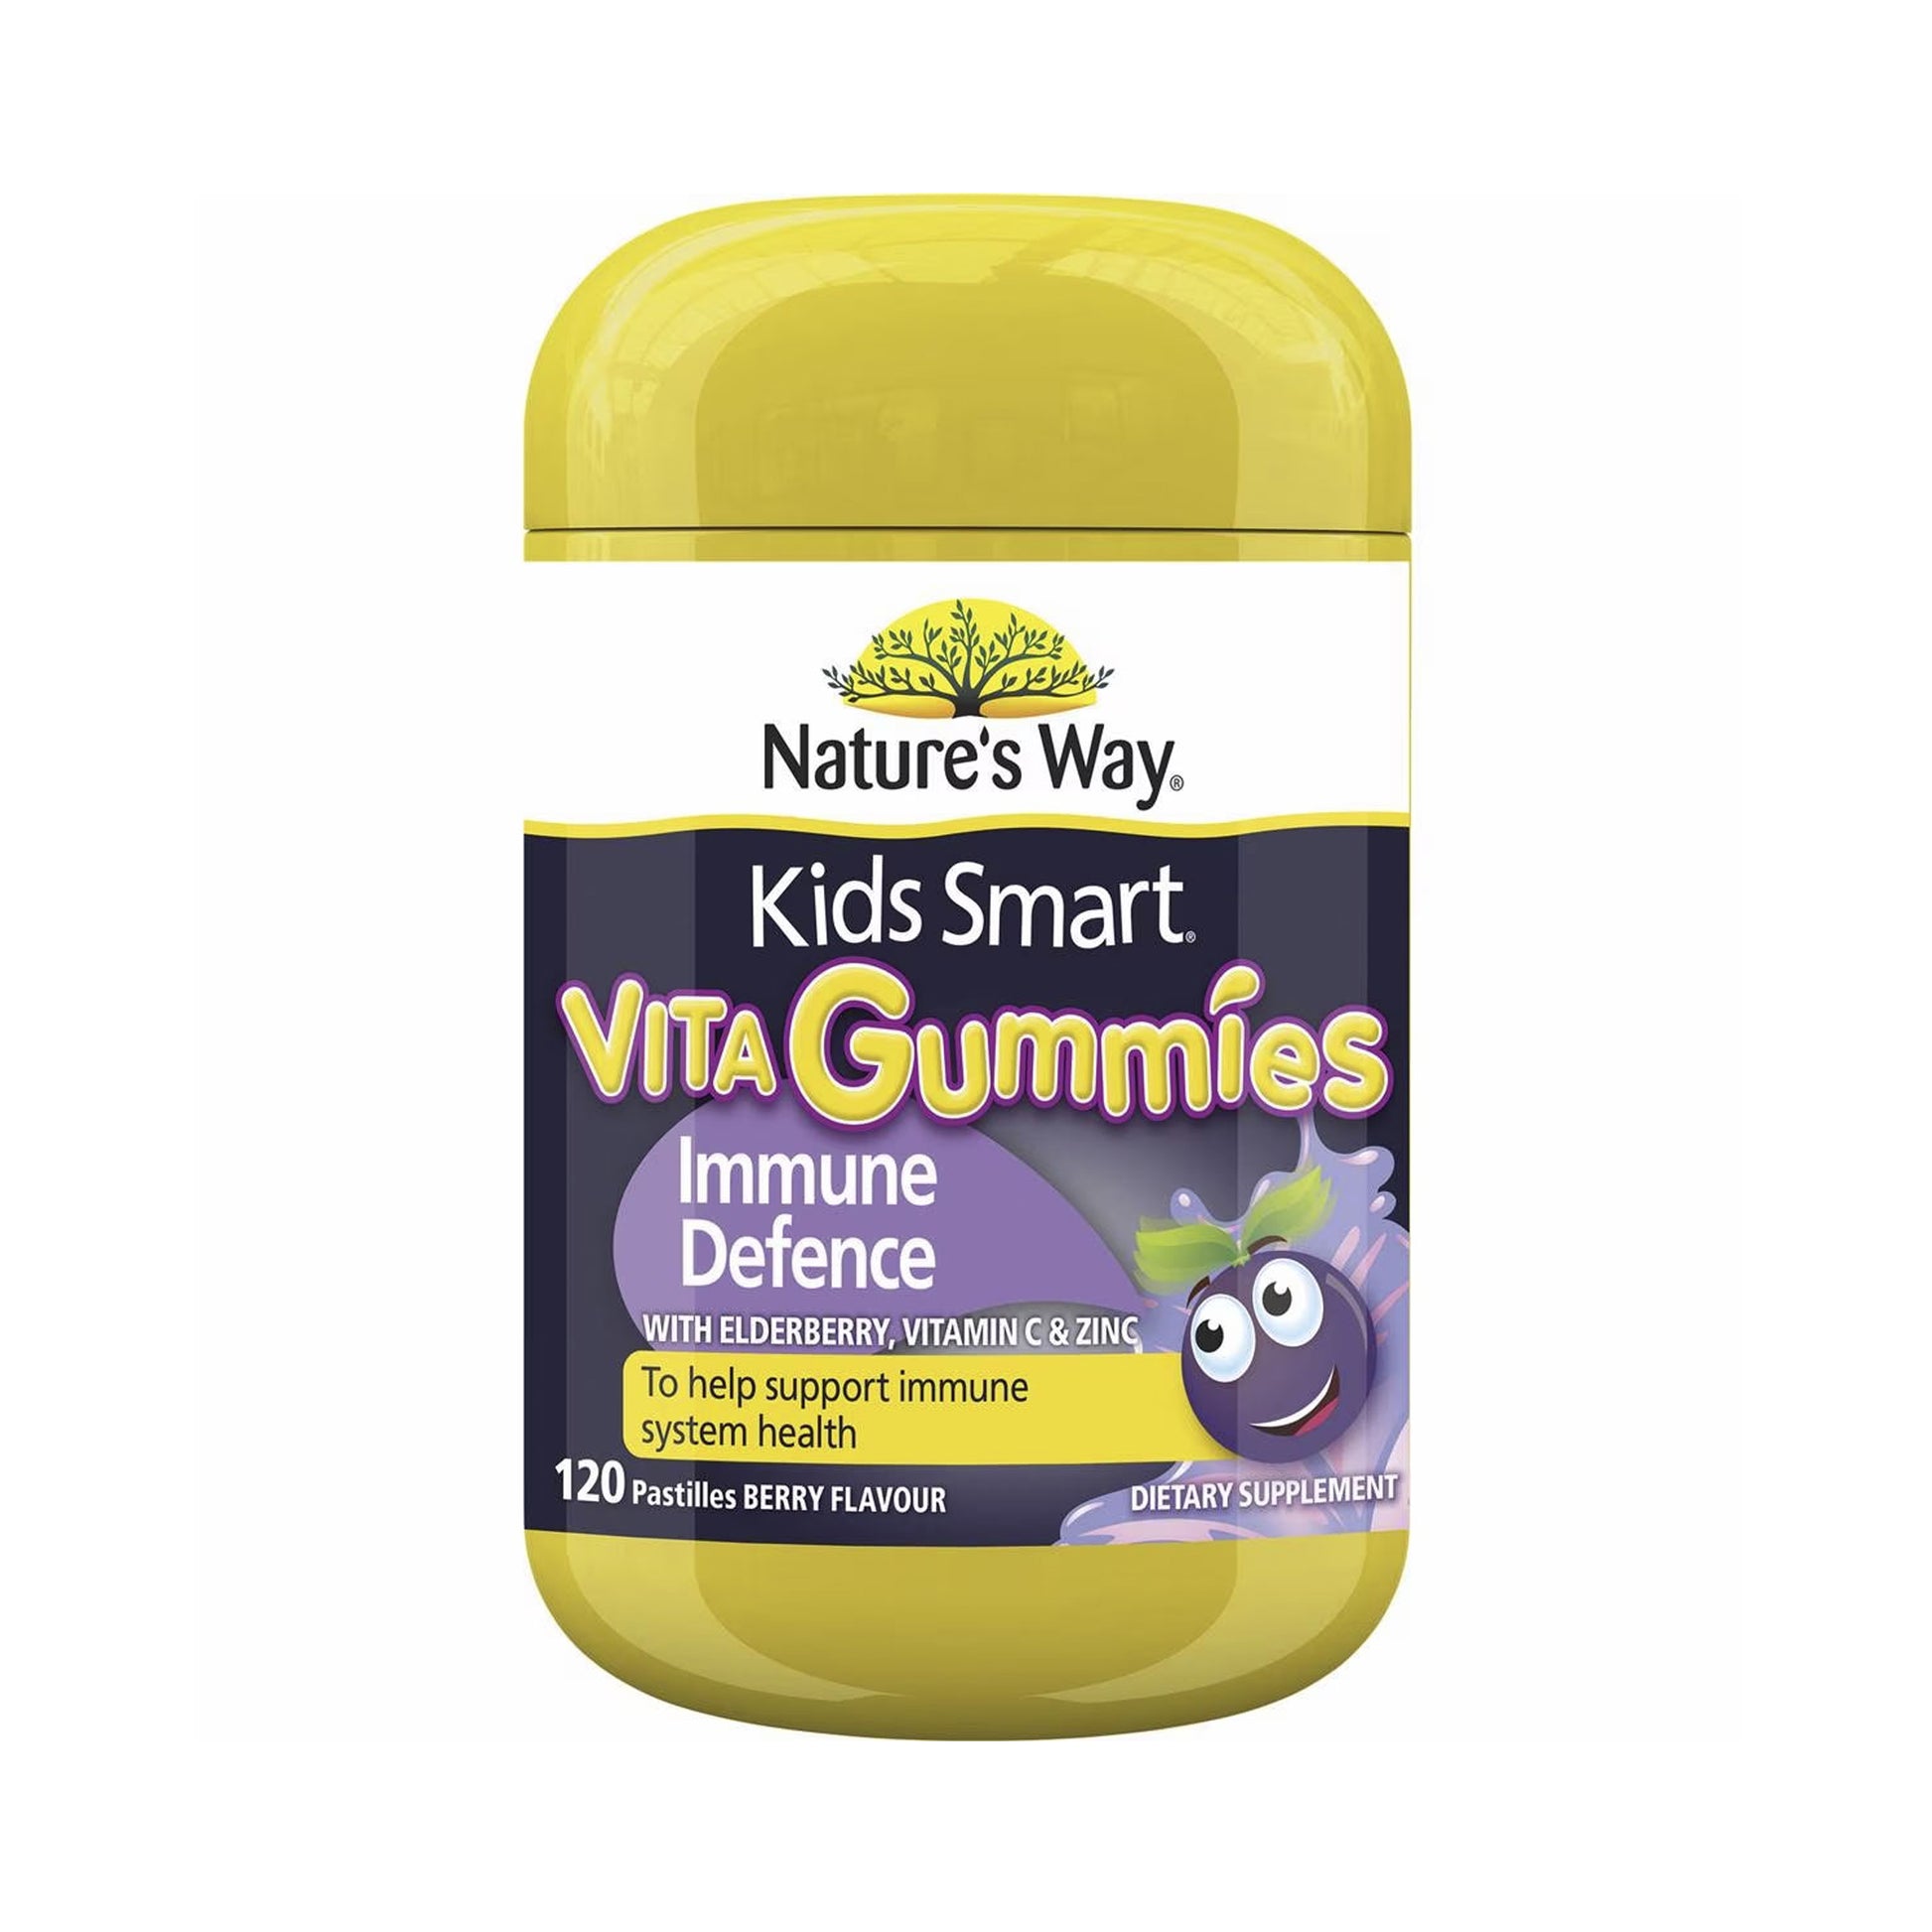 Nature's Way Kids Smart Vita Gummies Immune Defence 120 Pack